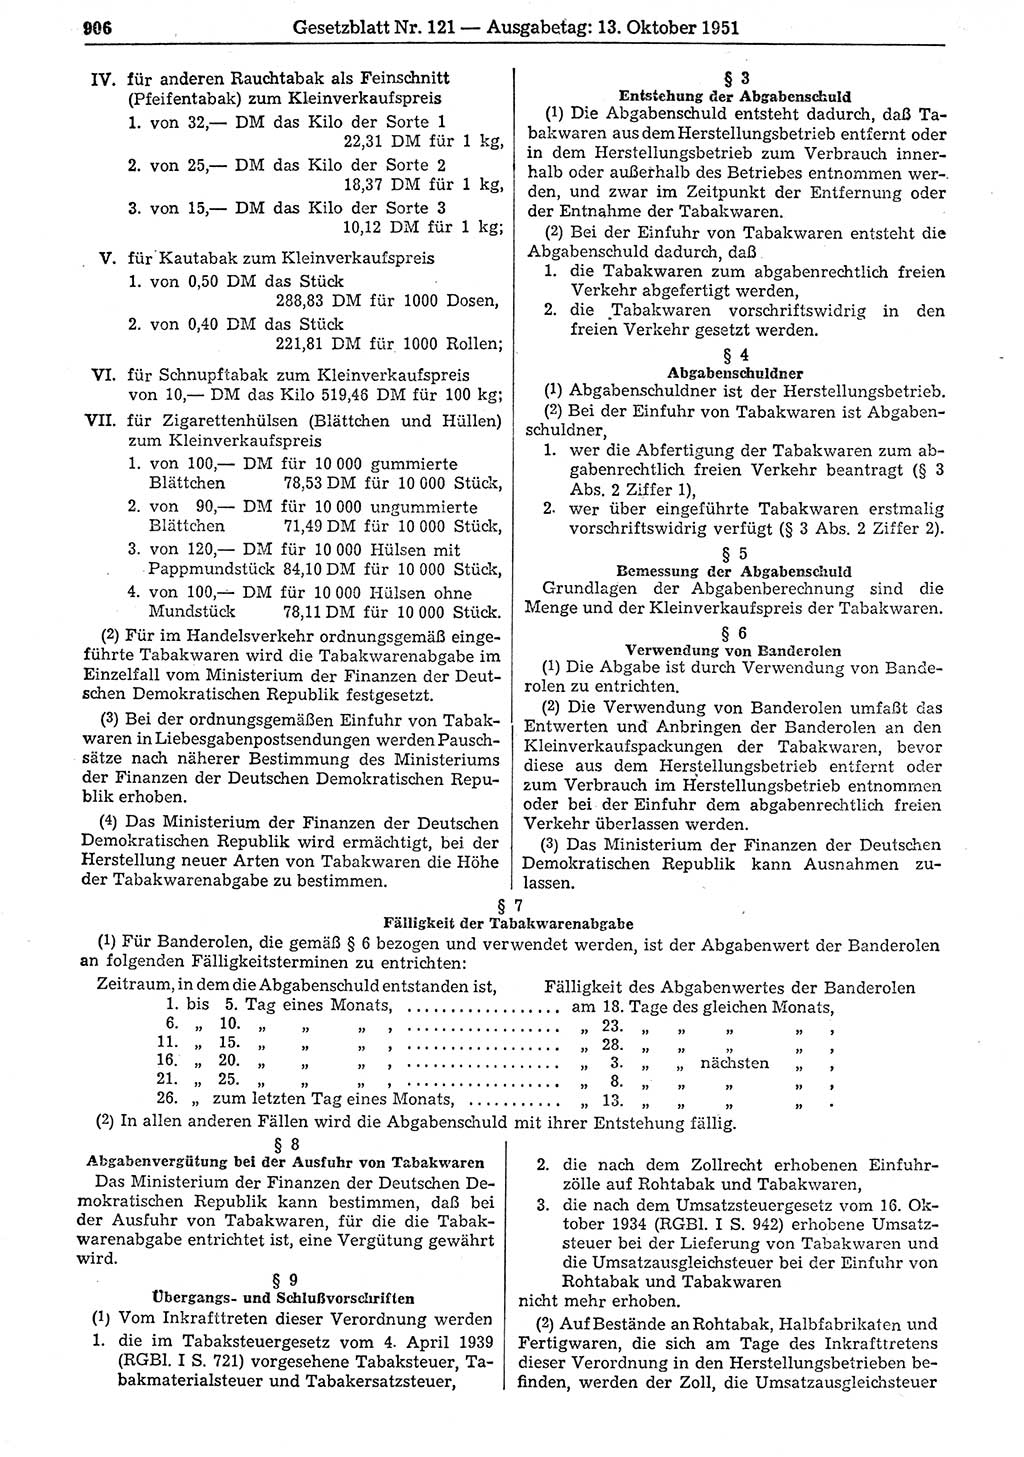 Gesetzblatt (GBl.) der Deutschen Demokratischen Republik (DDR) 1951, Seite 906 (GBl. DDR 1951, S. 906)